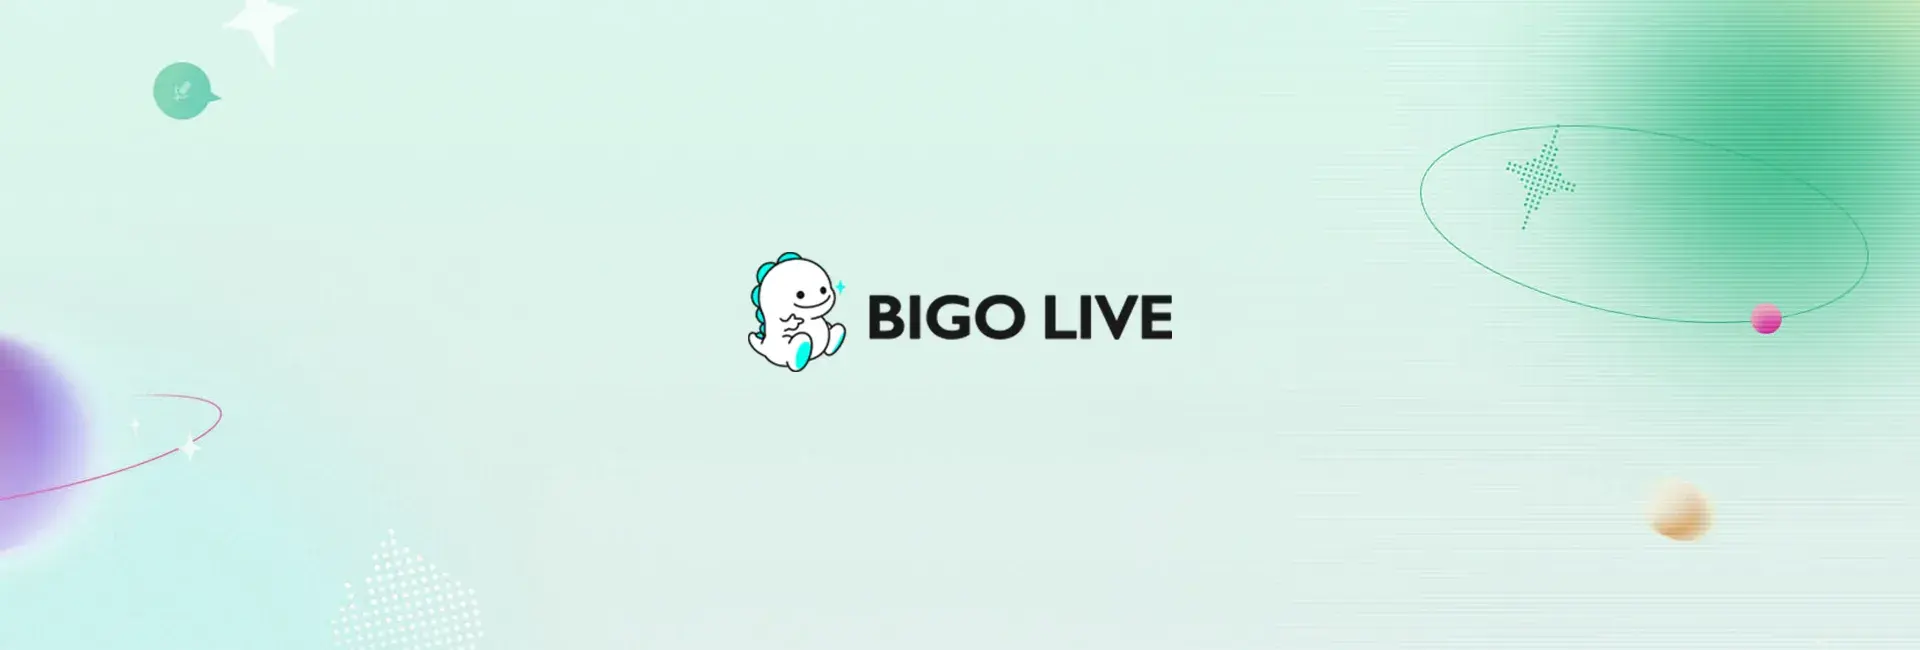 Bigo Live - 8000 Diamonds (Global)